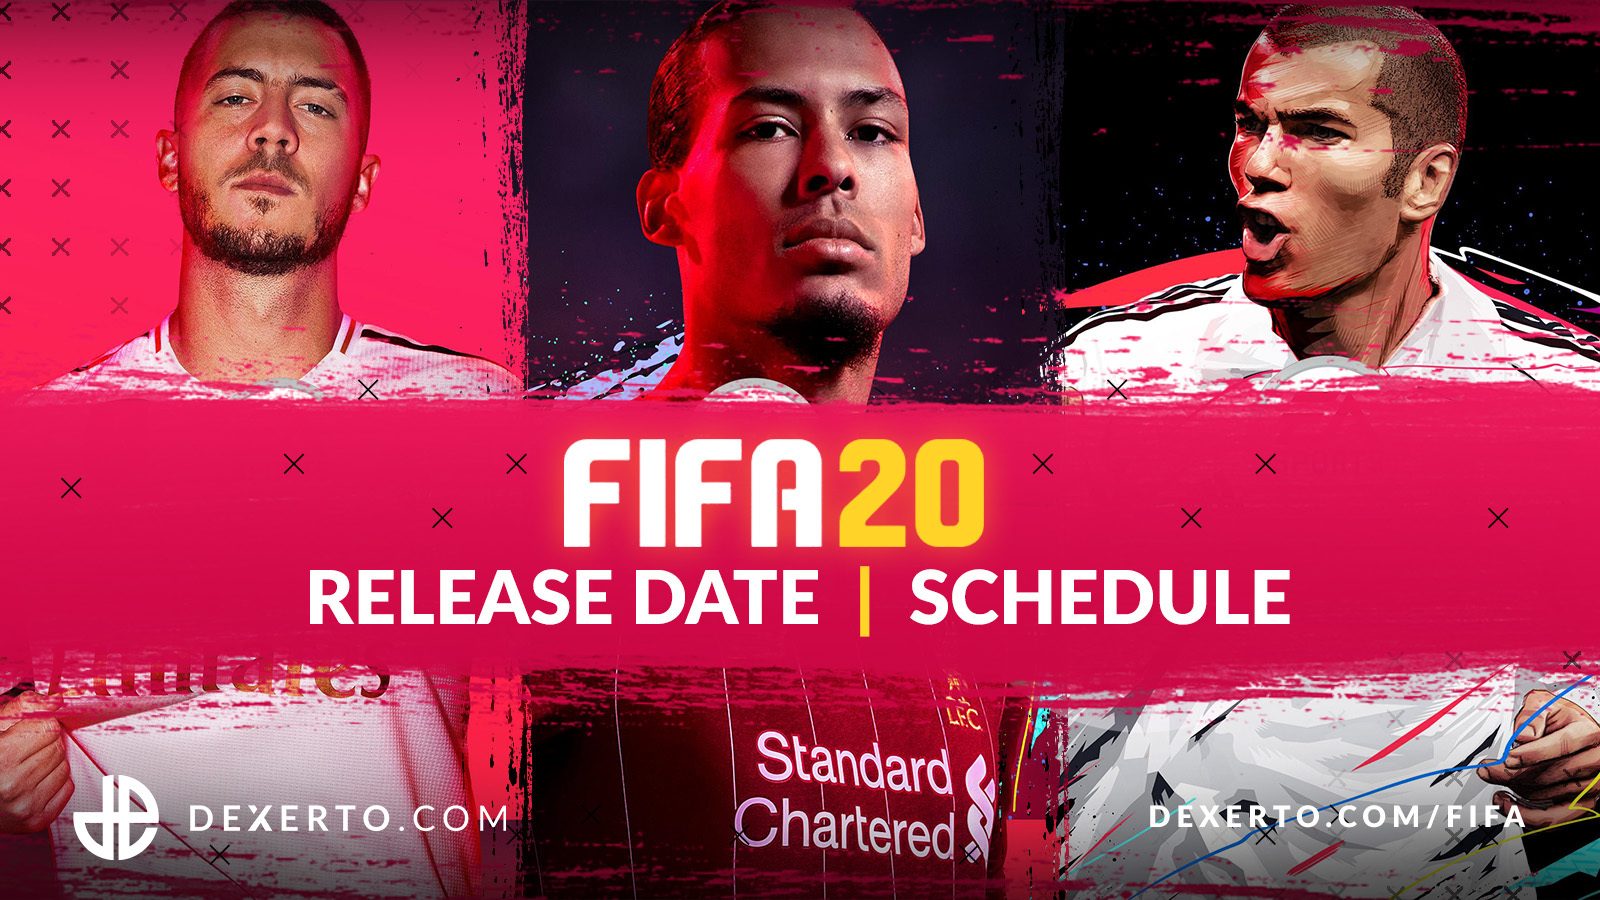 FIFA 20 Web App Login - FUT Web App official site now live